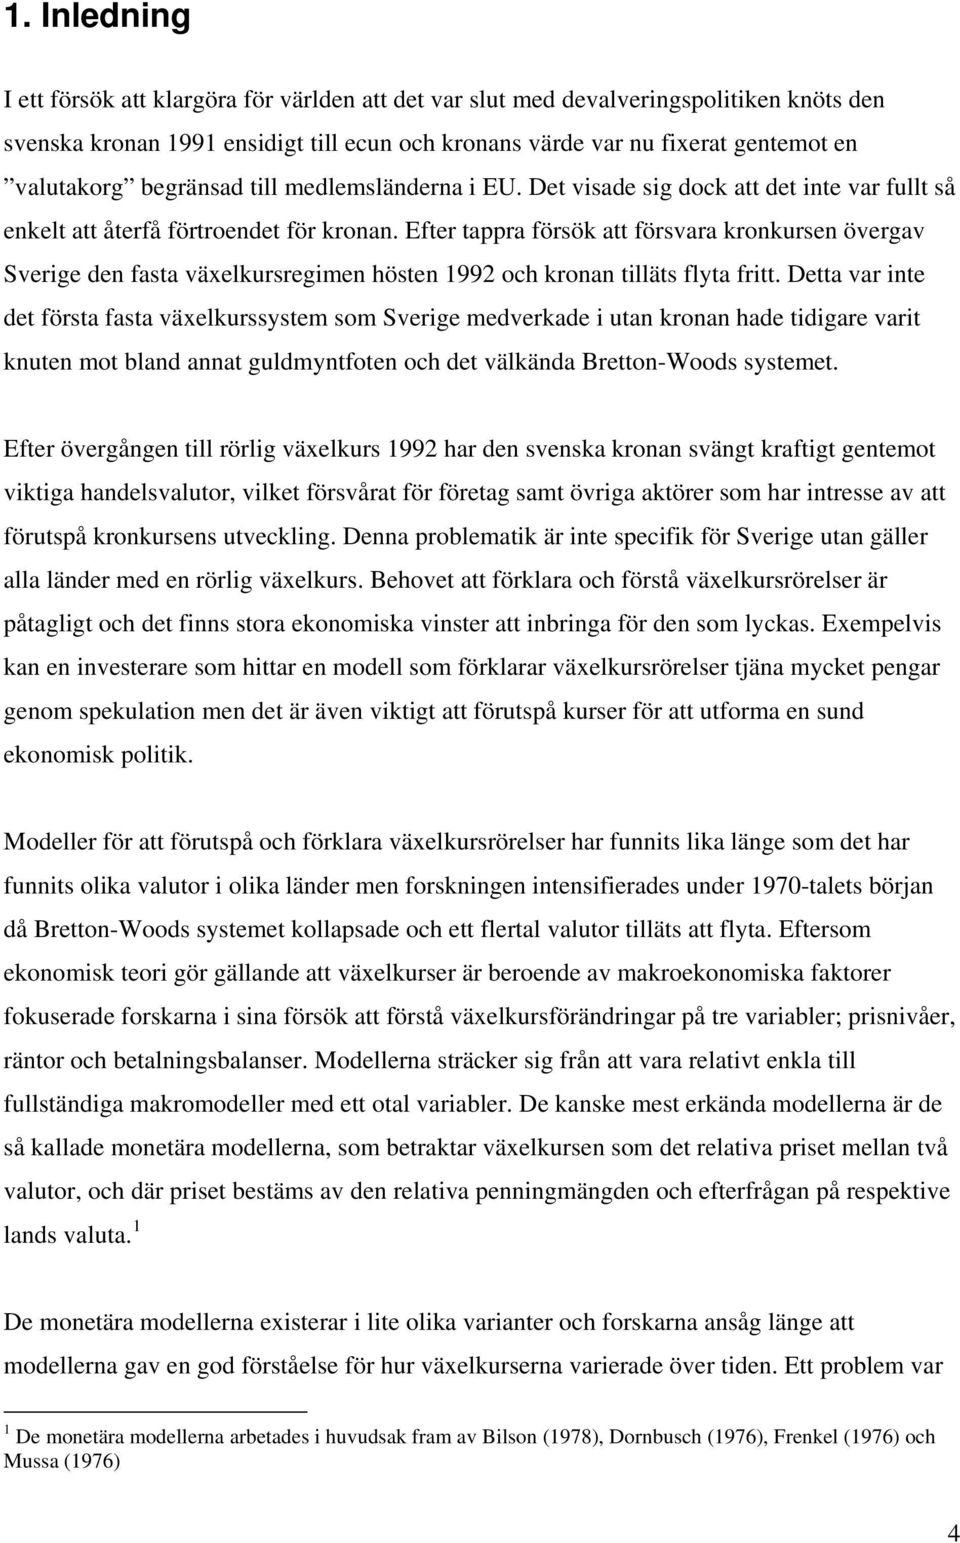 Efer appra försök a försvara kronkursen övergav Sverige den fasa växelkursregimen hösen 1992 och kronan illäs flya fri.